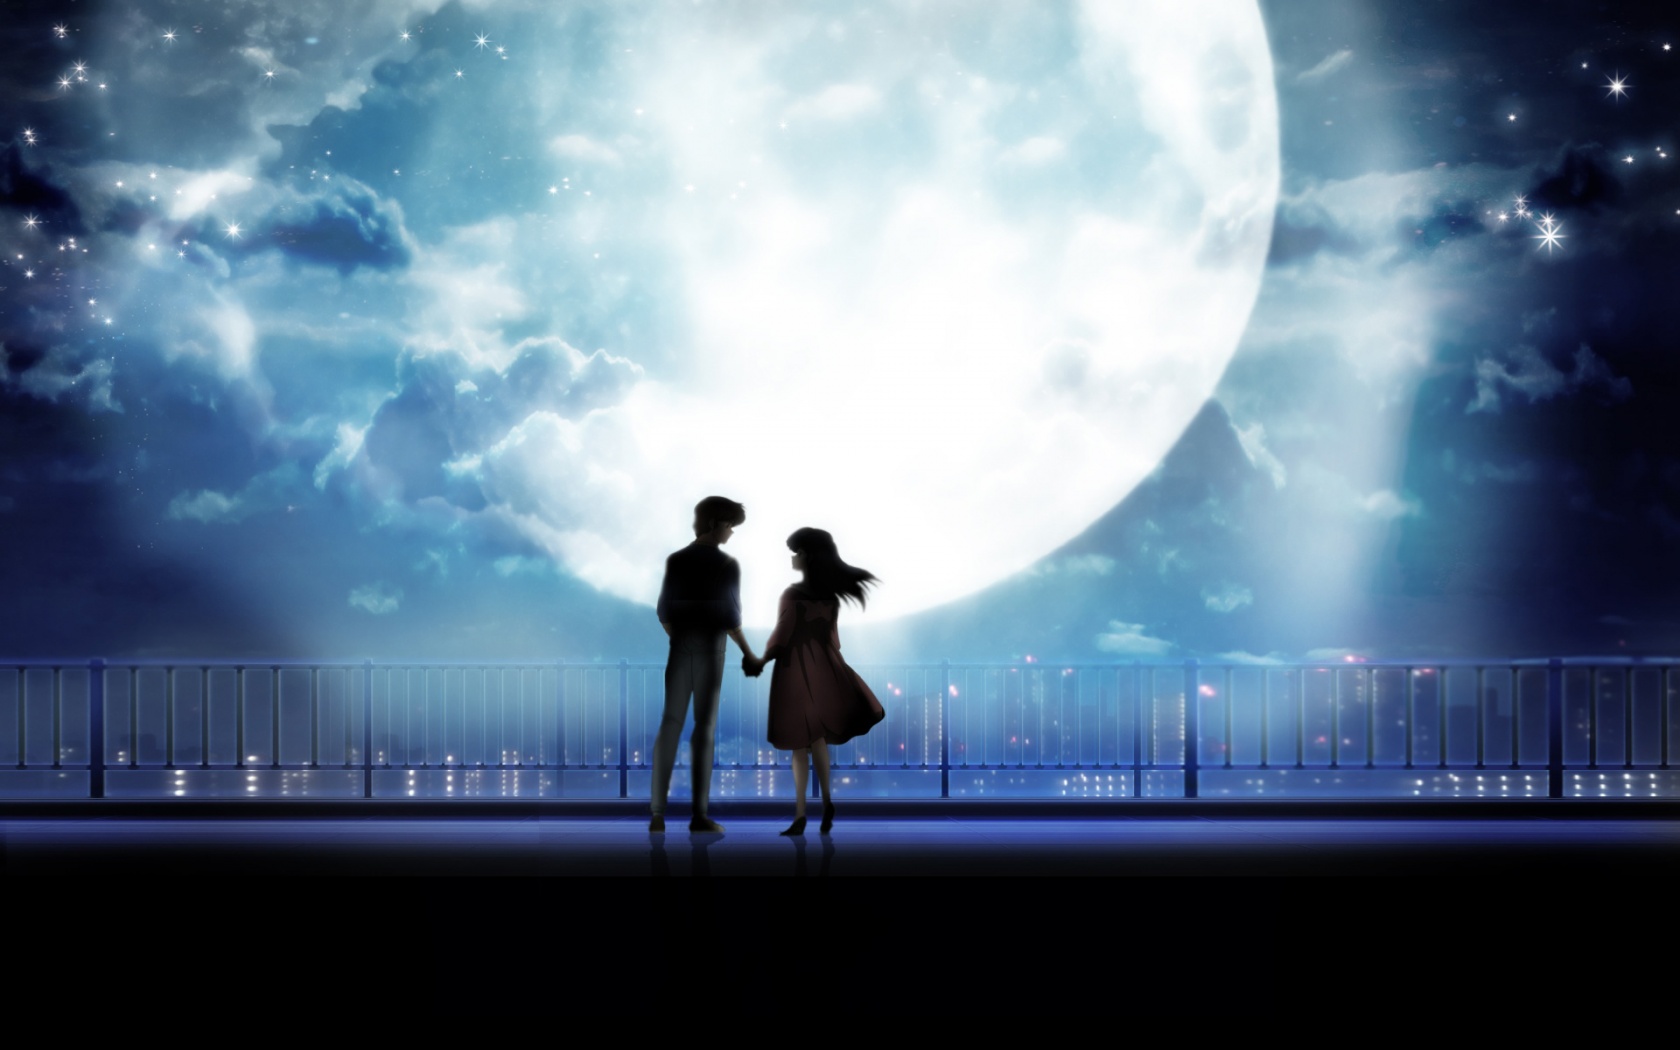 Anime Art Couple Holding Hands Moonlight Desktop Jpg